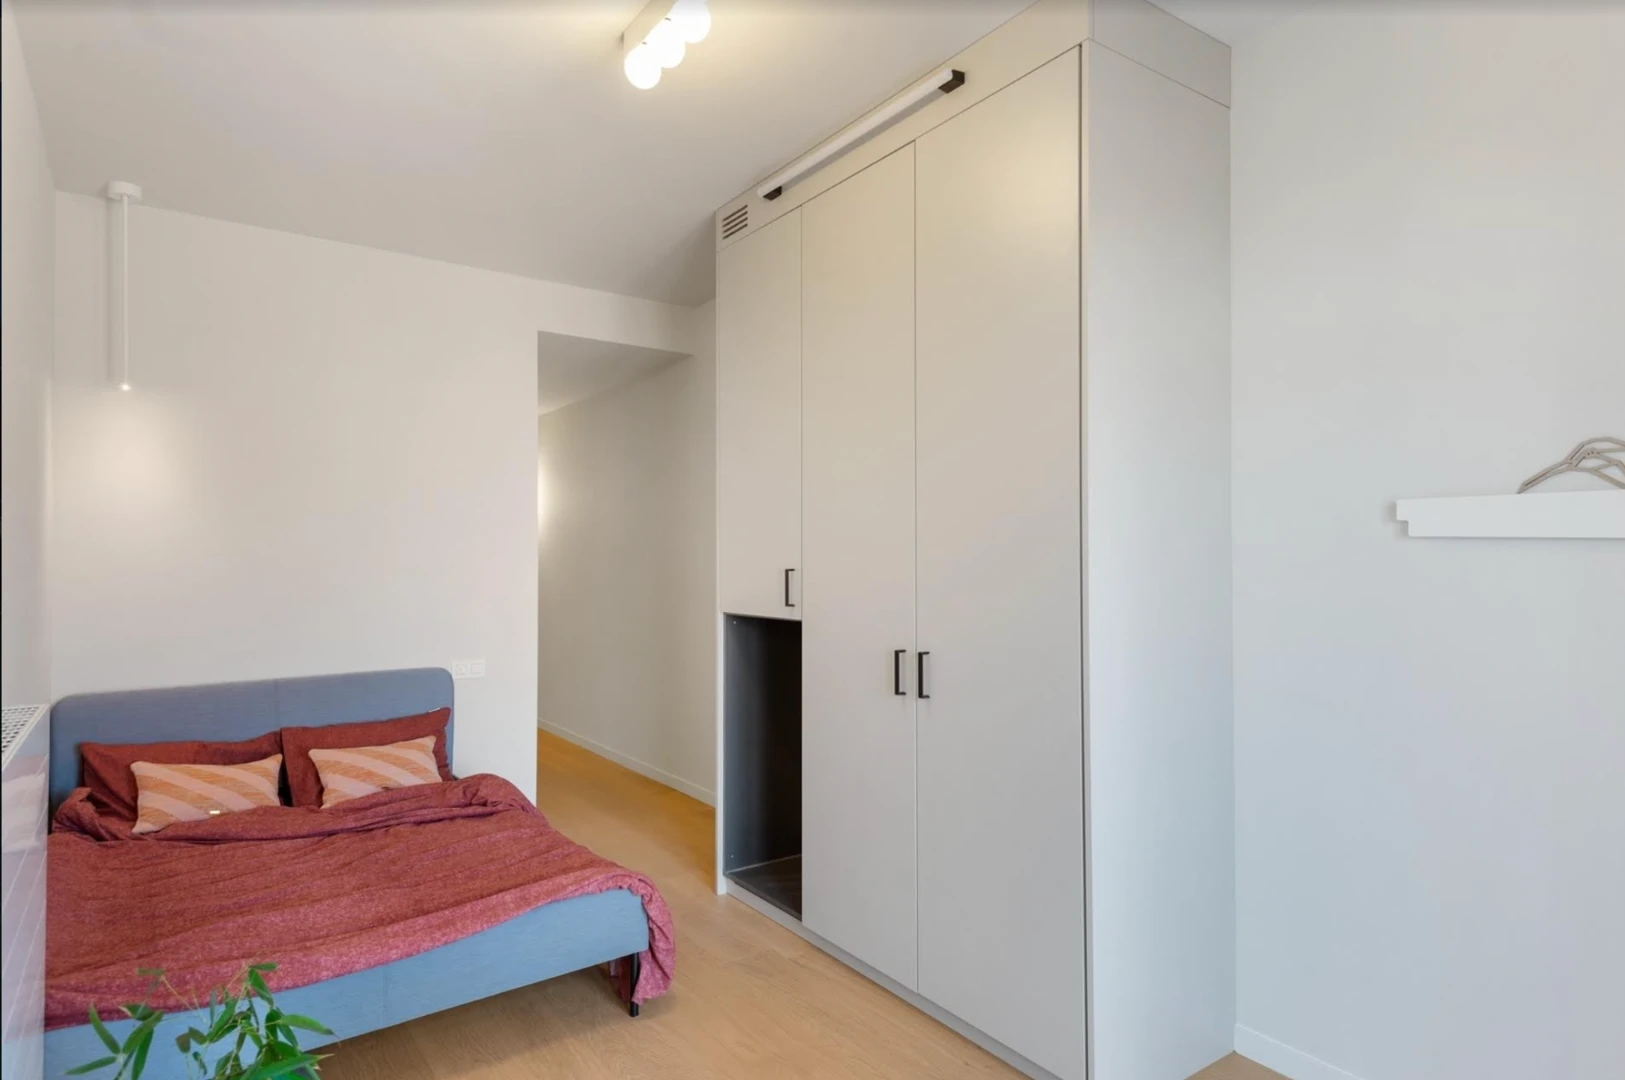 Quarto para alugar num apartamento partilhado em Antuérpia